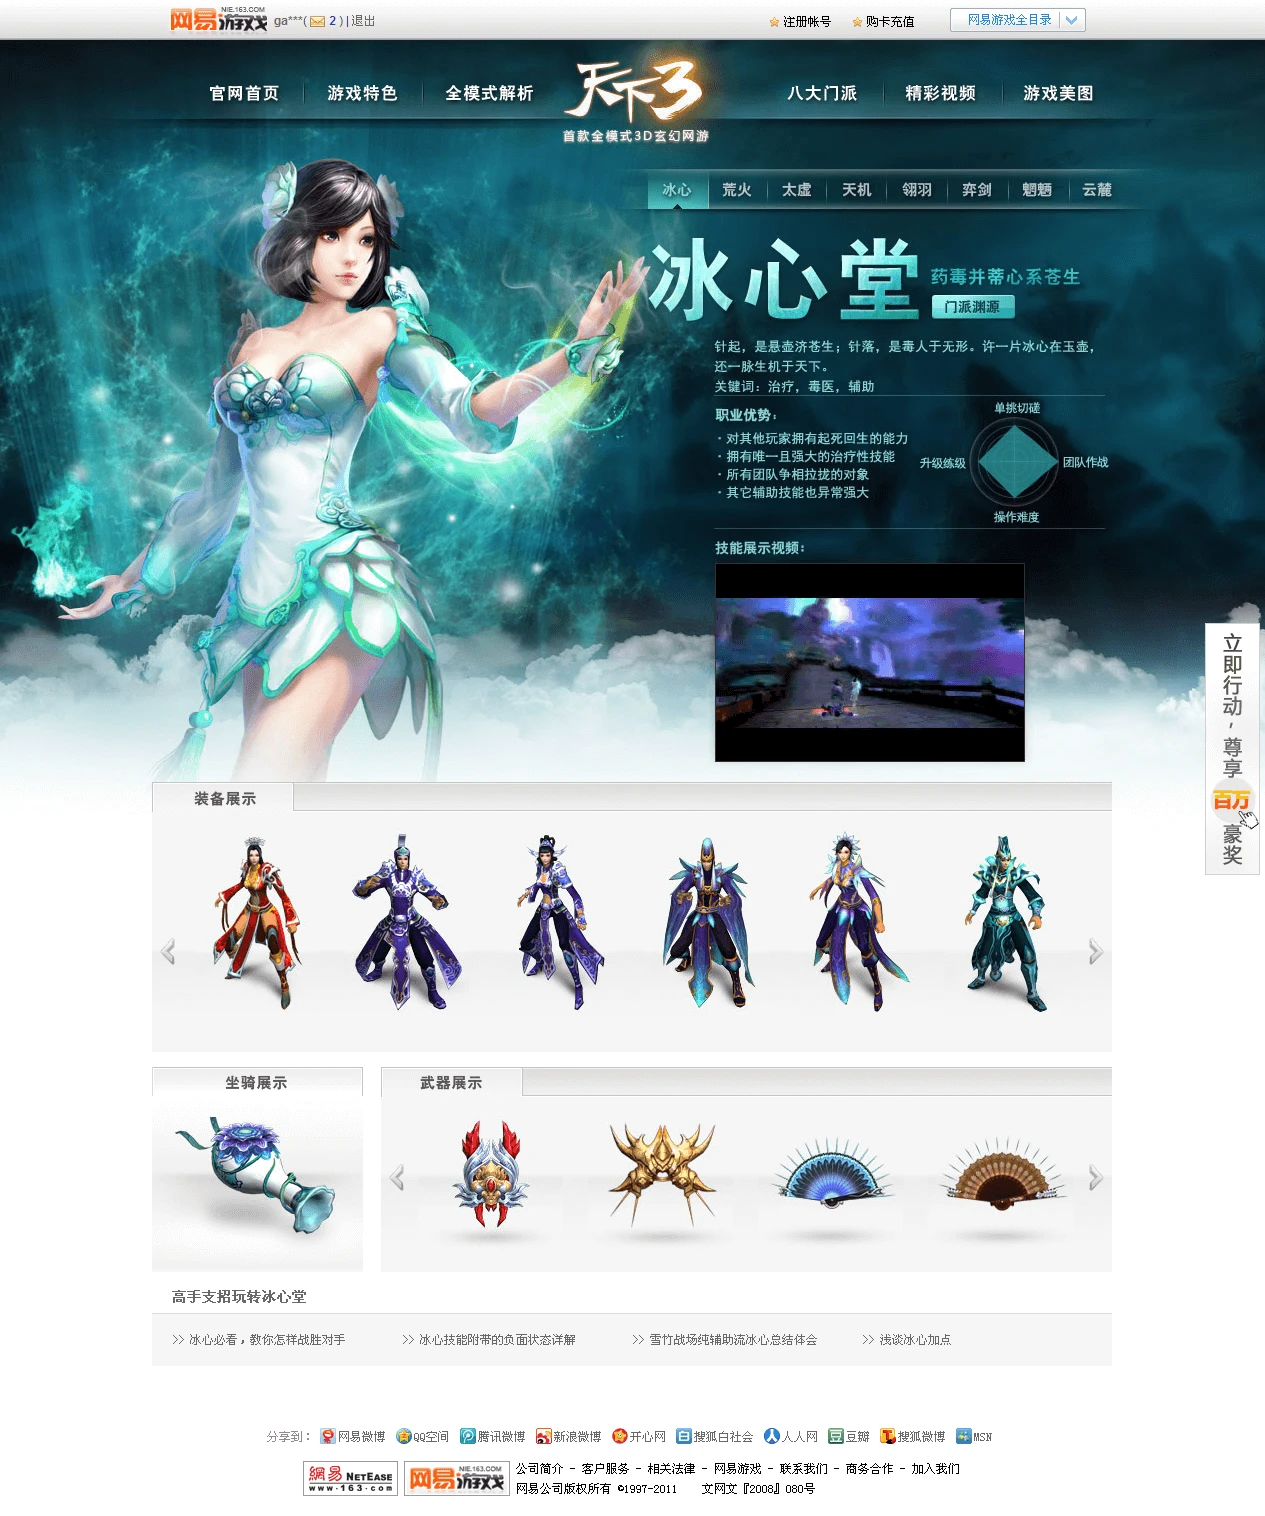 国产网游中国风3D武侠游戏之天下网页设计赏析 游戏职业